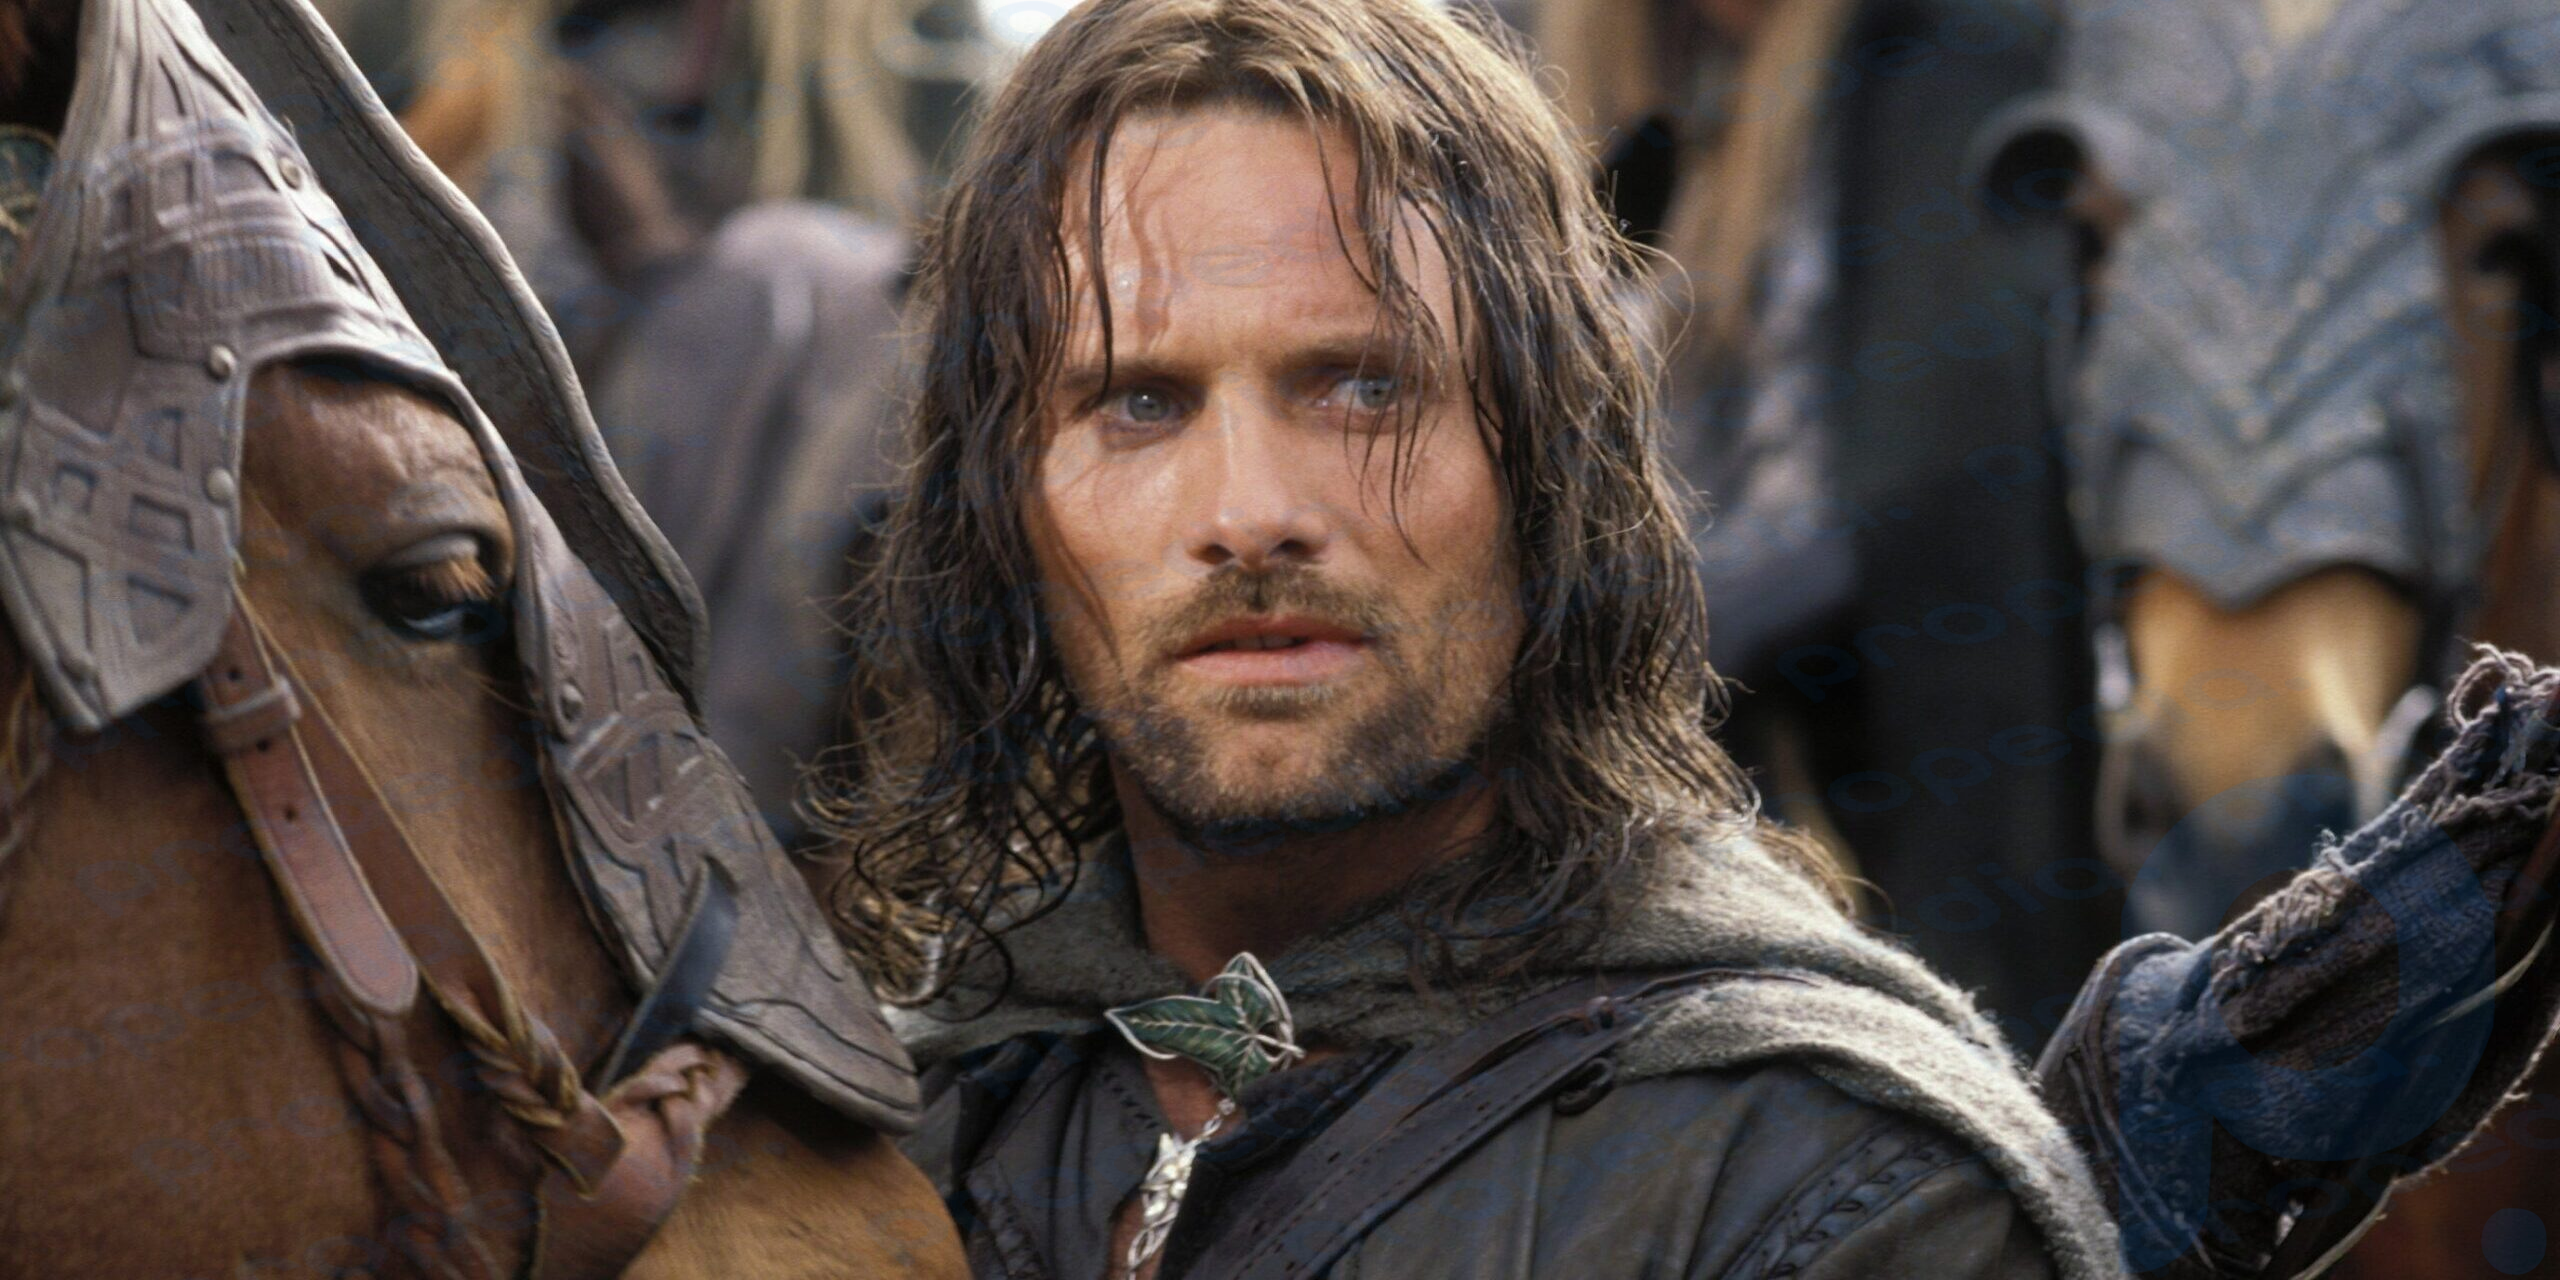 Ken yerine “Yüzüklerin Efendisi”nden Aragorn: Margot Robbie filmde hoşlandığı kişinin adını verdi